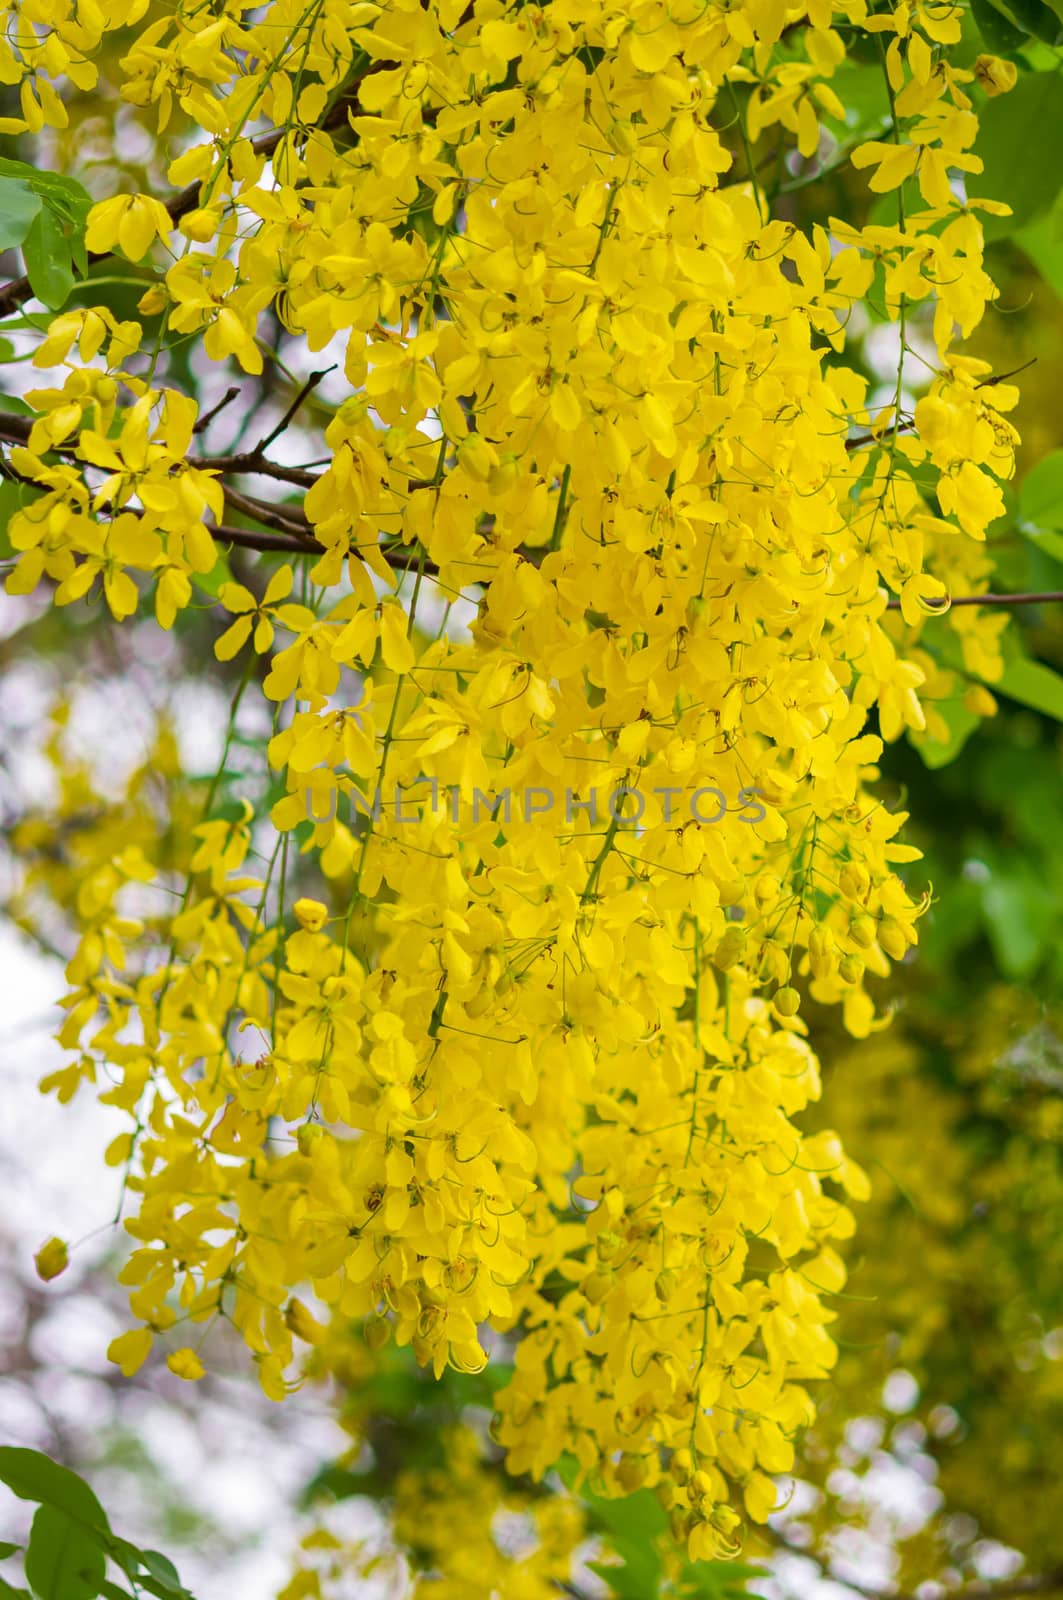 Cassia fistula or Golden shower flower by seksan44